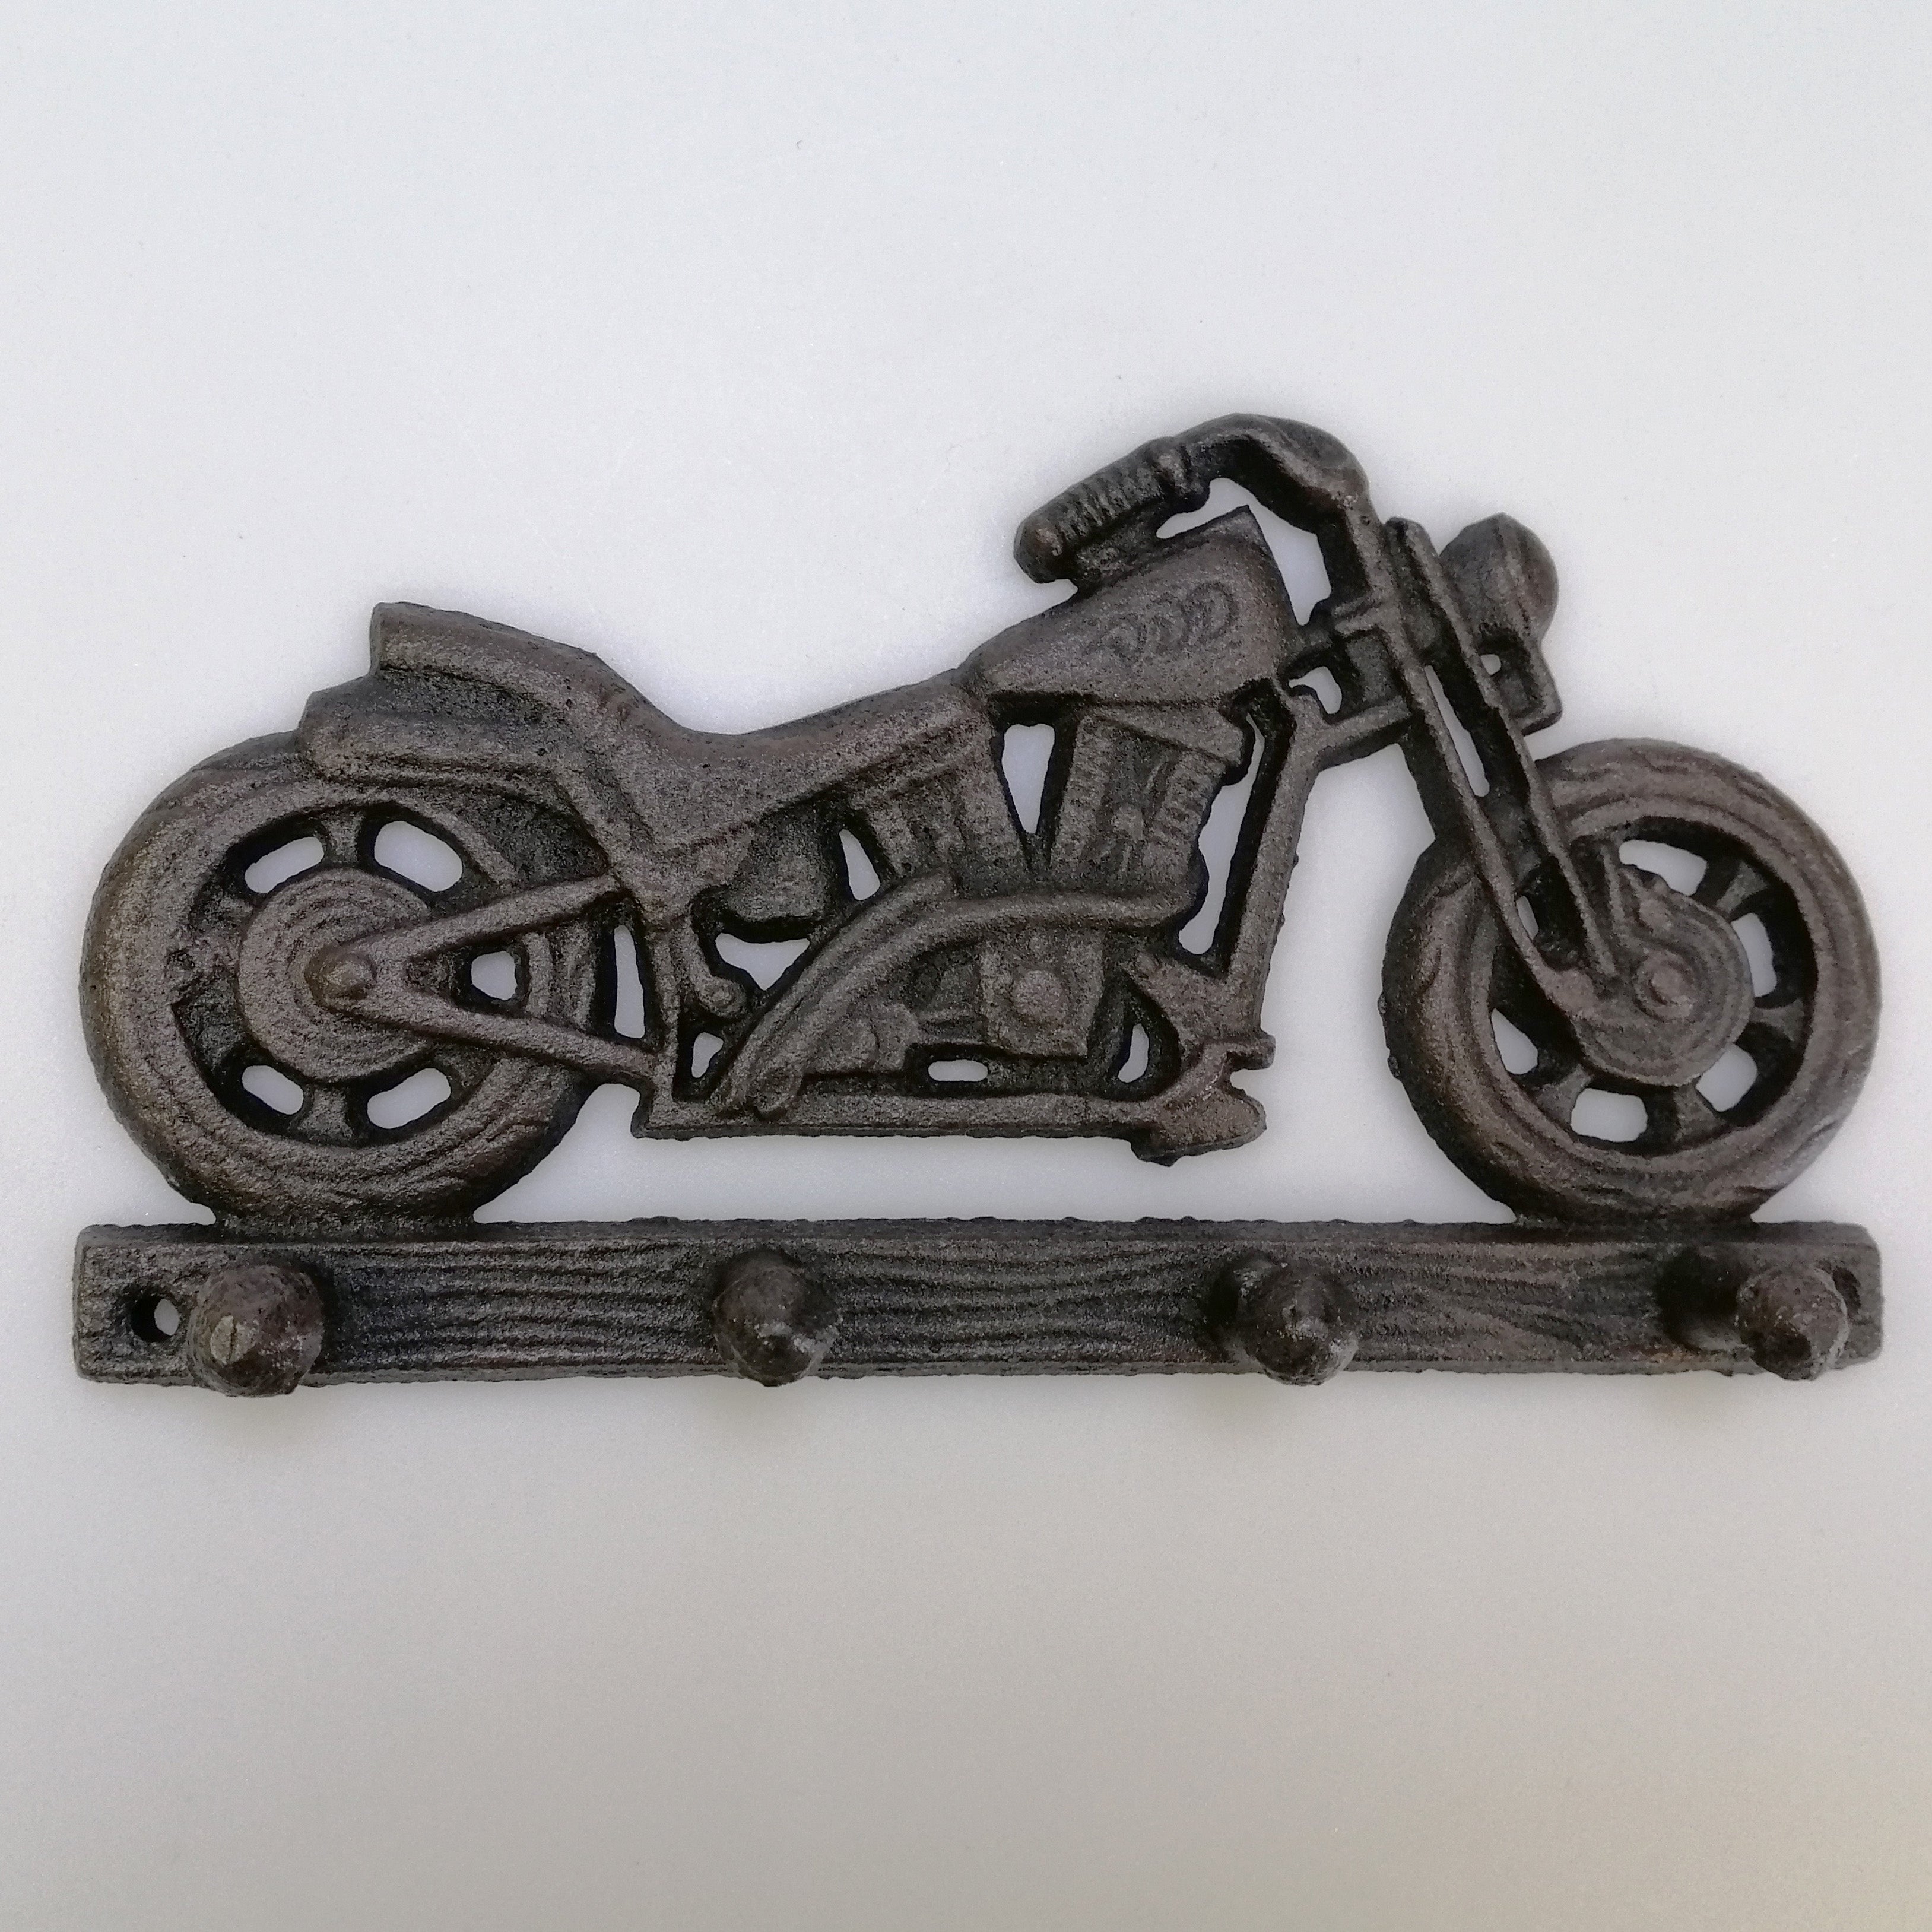 Cast Iron Key holder - Motorcycle